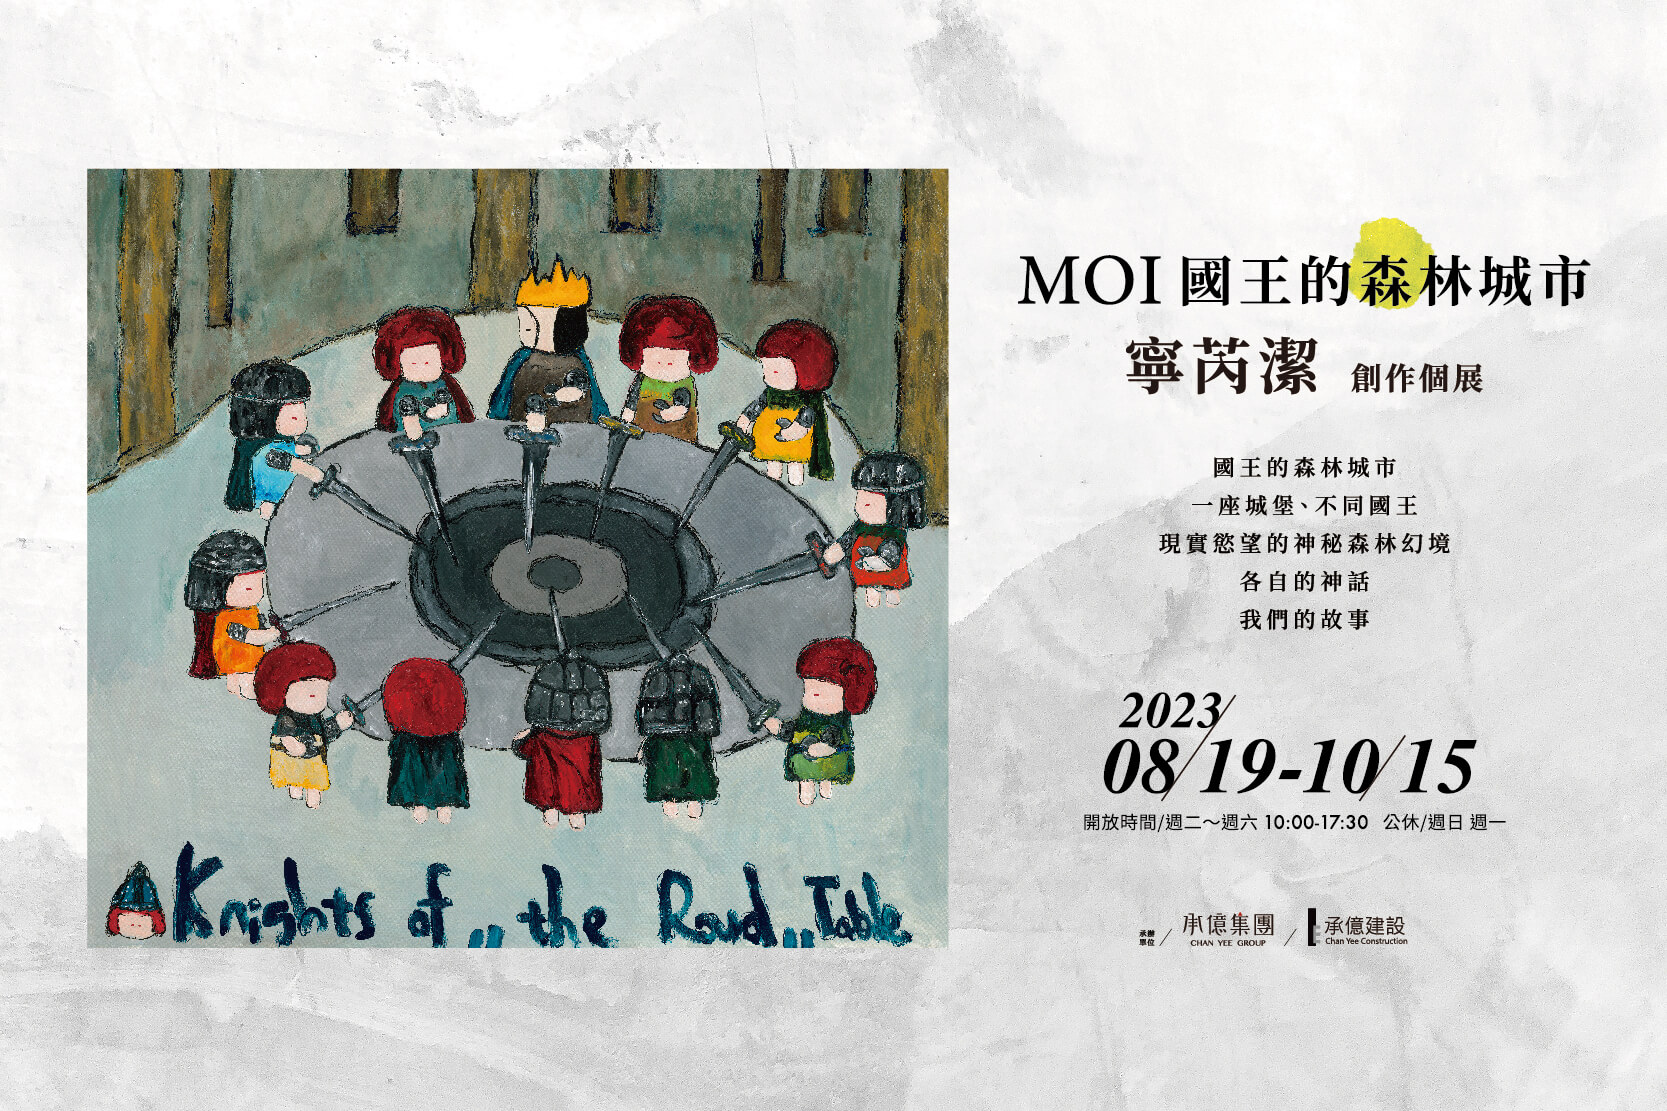 感受滿滿的幸福感！台灣當代藝術家打造《國王的森林城市》_最萌療癒力進駐嘉義_MOI_策展_電子宣傳卡.jpg